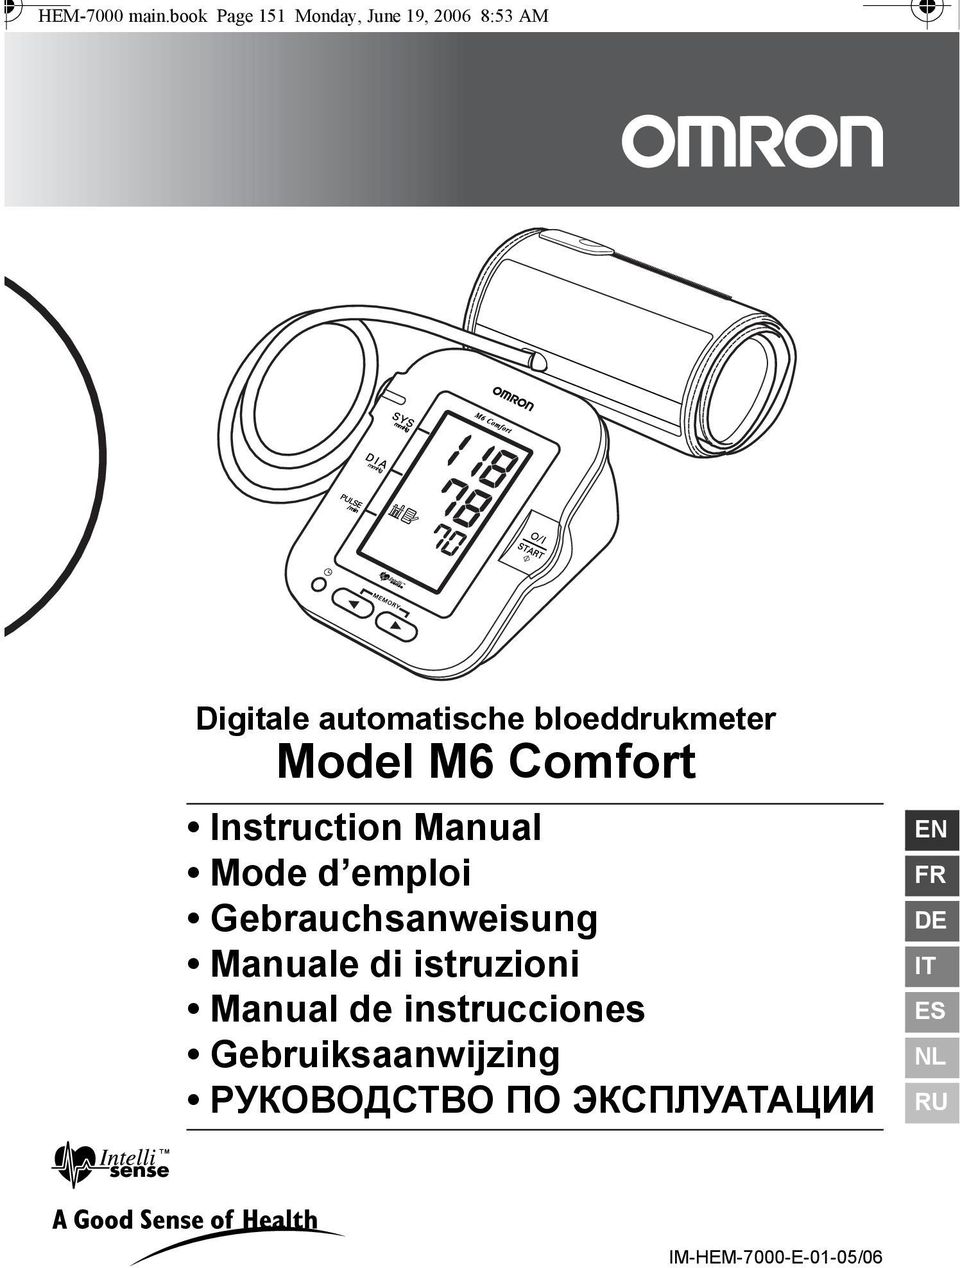 Digitale automatische bloeddrukmeter Model M6 Comfort Instruction Manual